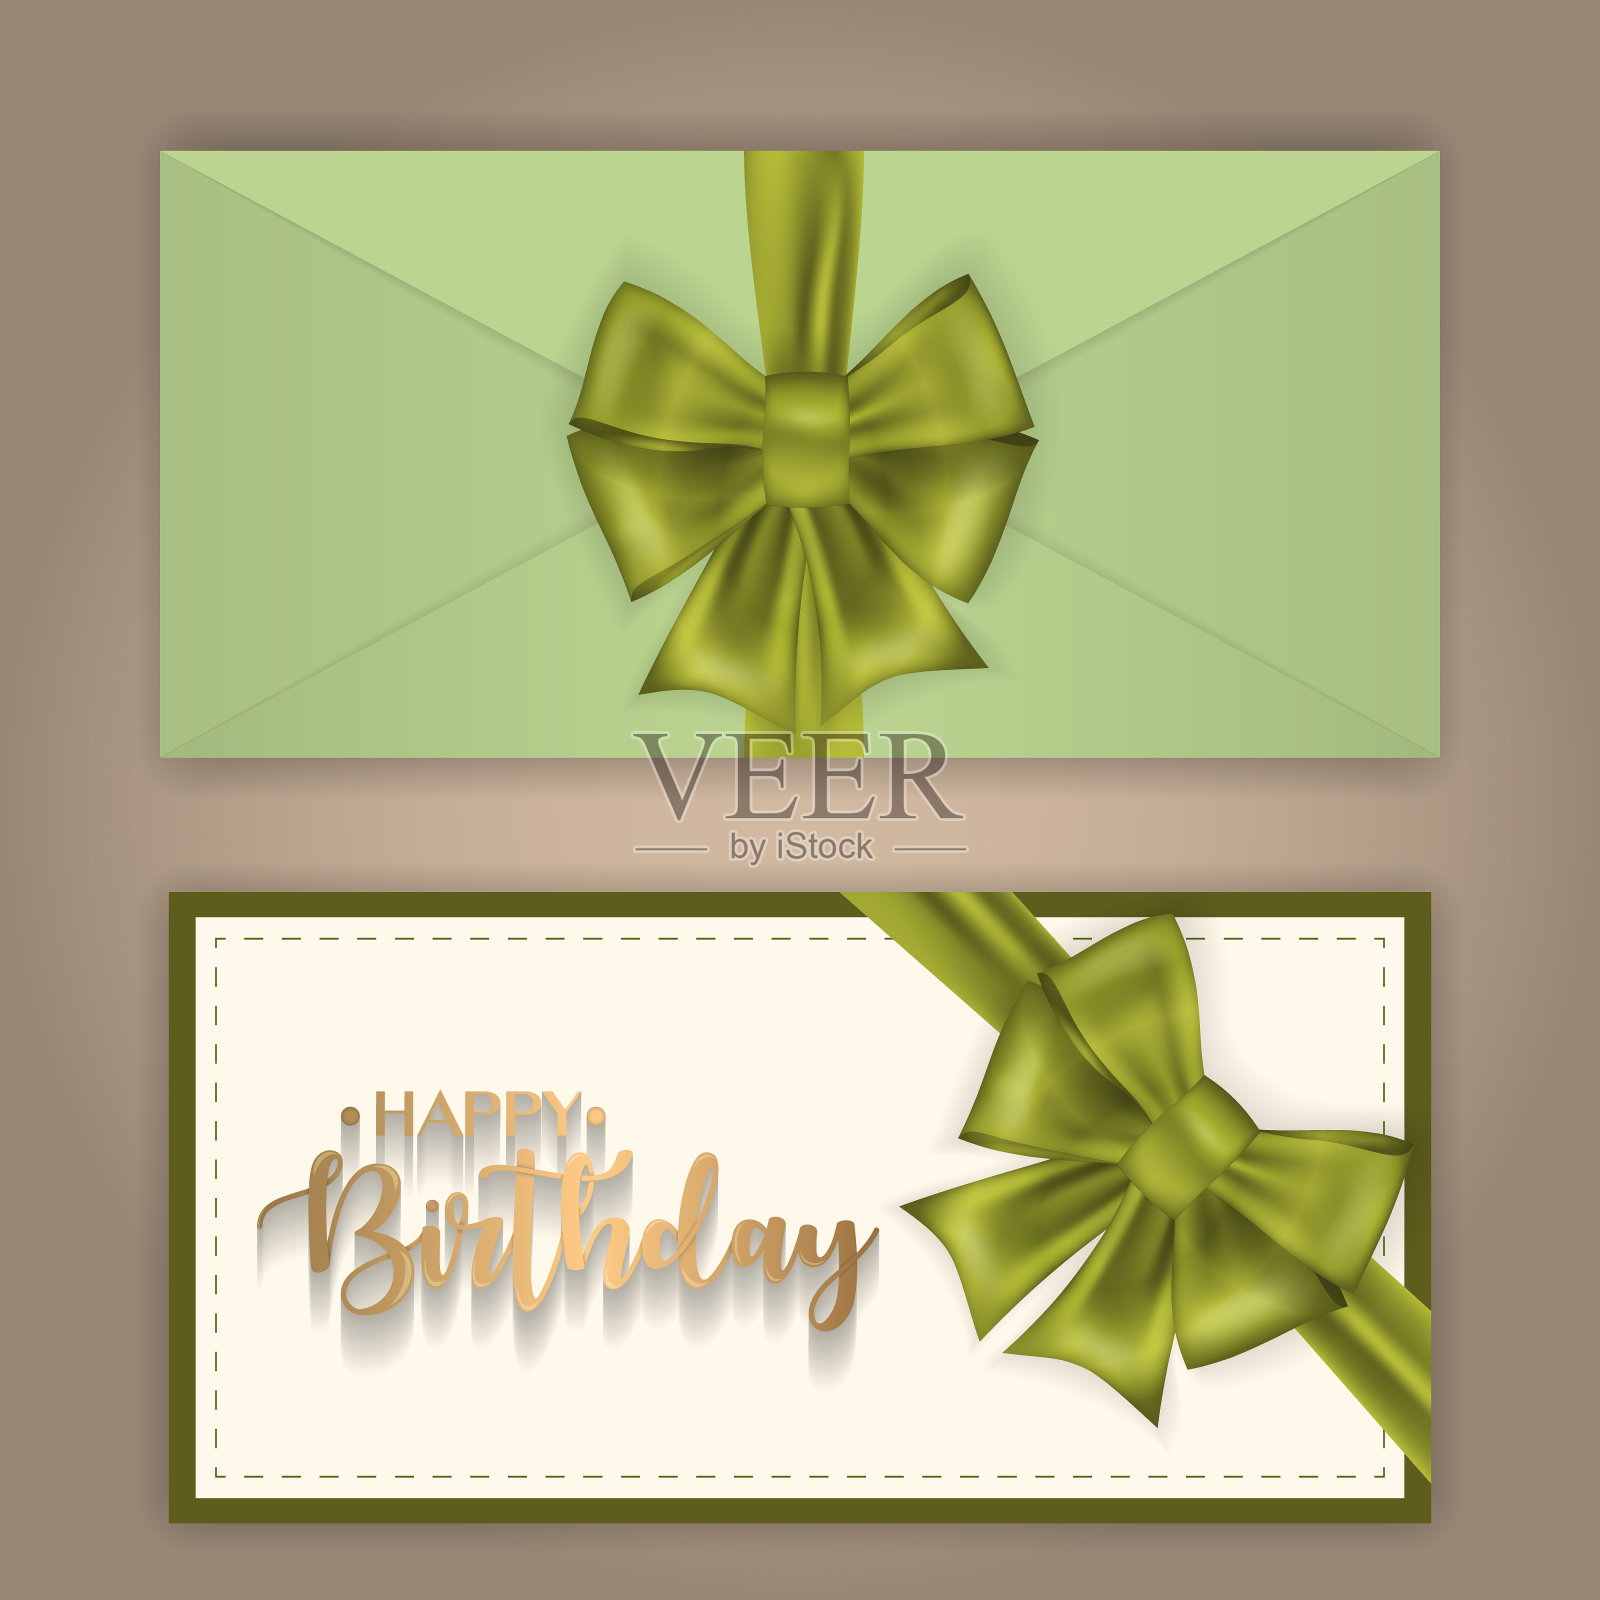 用蝴蝶结和丝带装饰的生日问候信封。设计模板素材